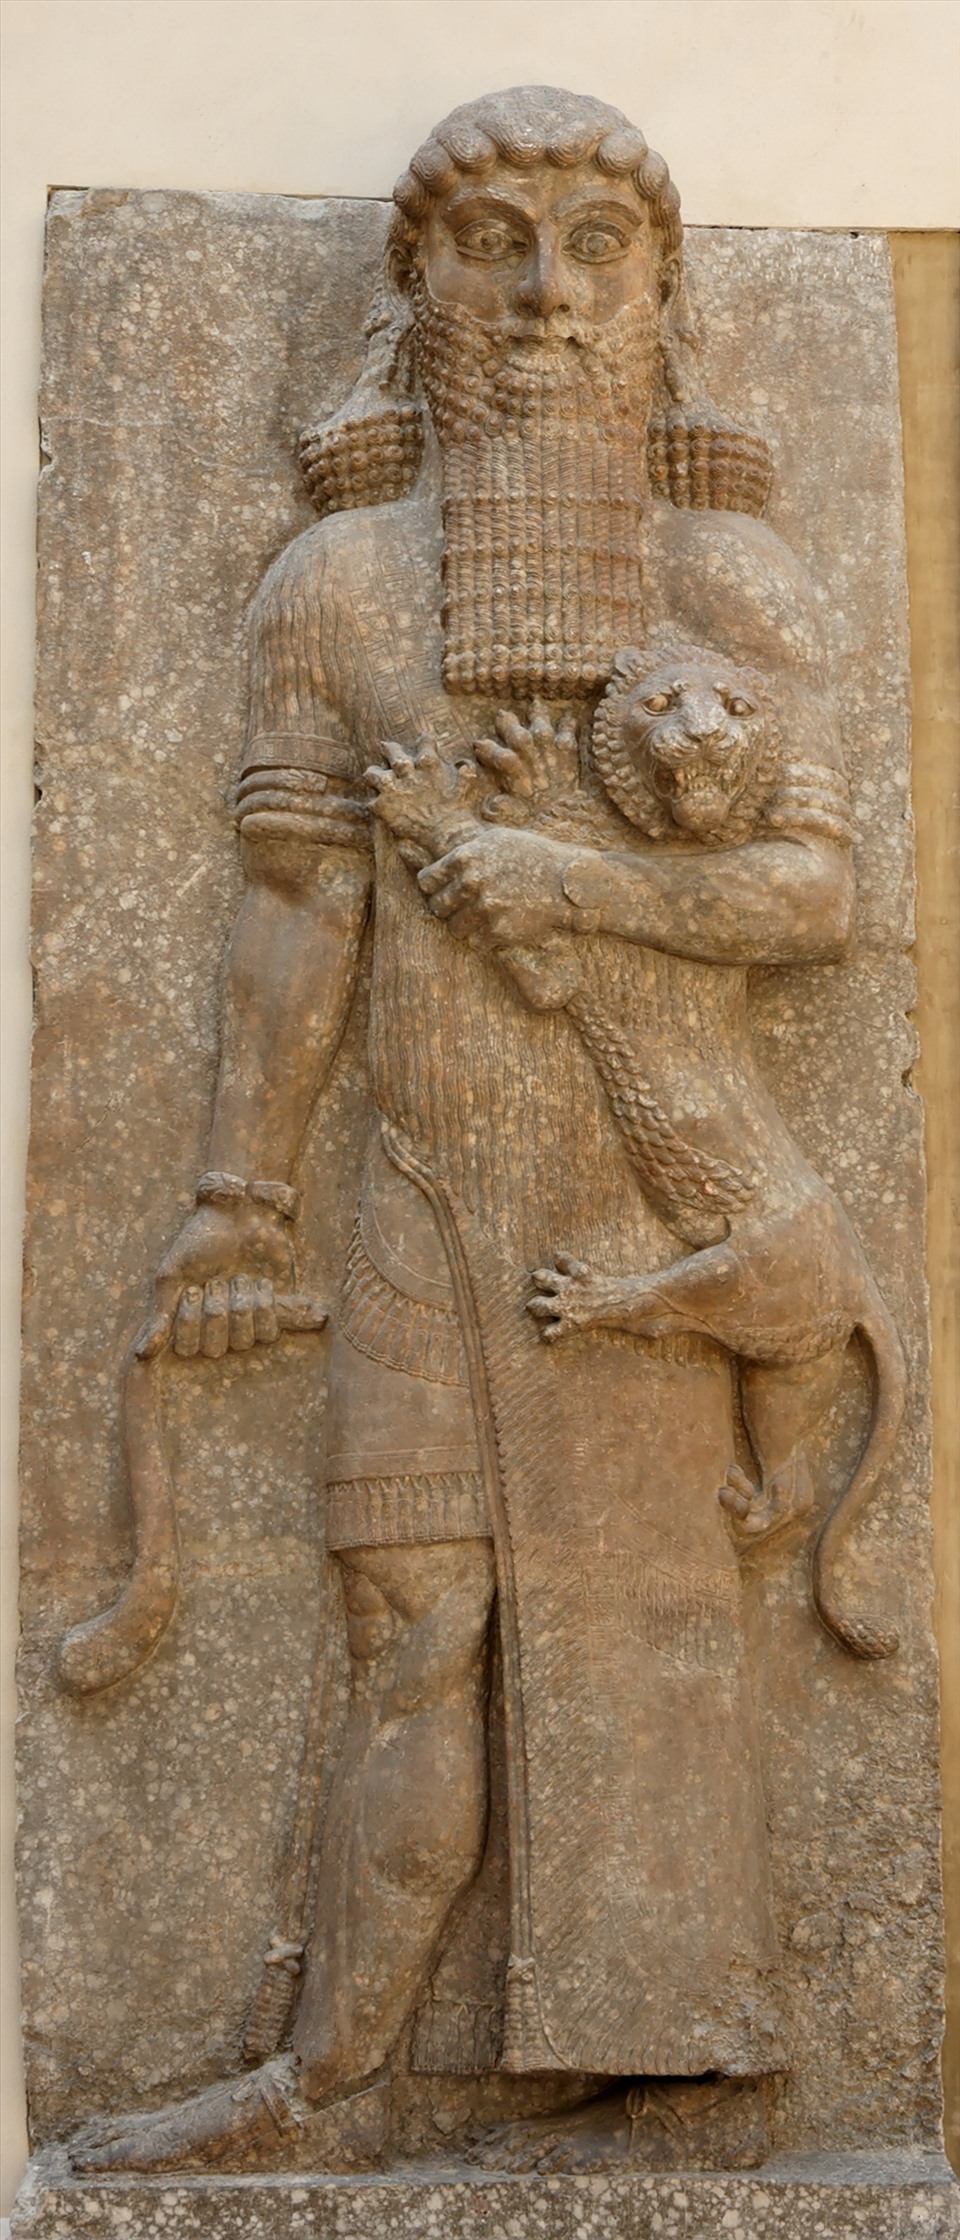 Một bức phù điêu cổ mô tả vua Gilgamesh, một anh hùng trong thần thoại Lưỡng Hà cổ đại, nhân vật chính của Sử thi Gilgamesh, chúa tể muôn loài, với sư tử bên tay trái và rắn bên tay phải, hiện tại đang được trưng bày ở bảo tàng Louvre. Nguồn: AFP